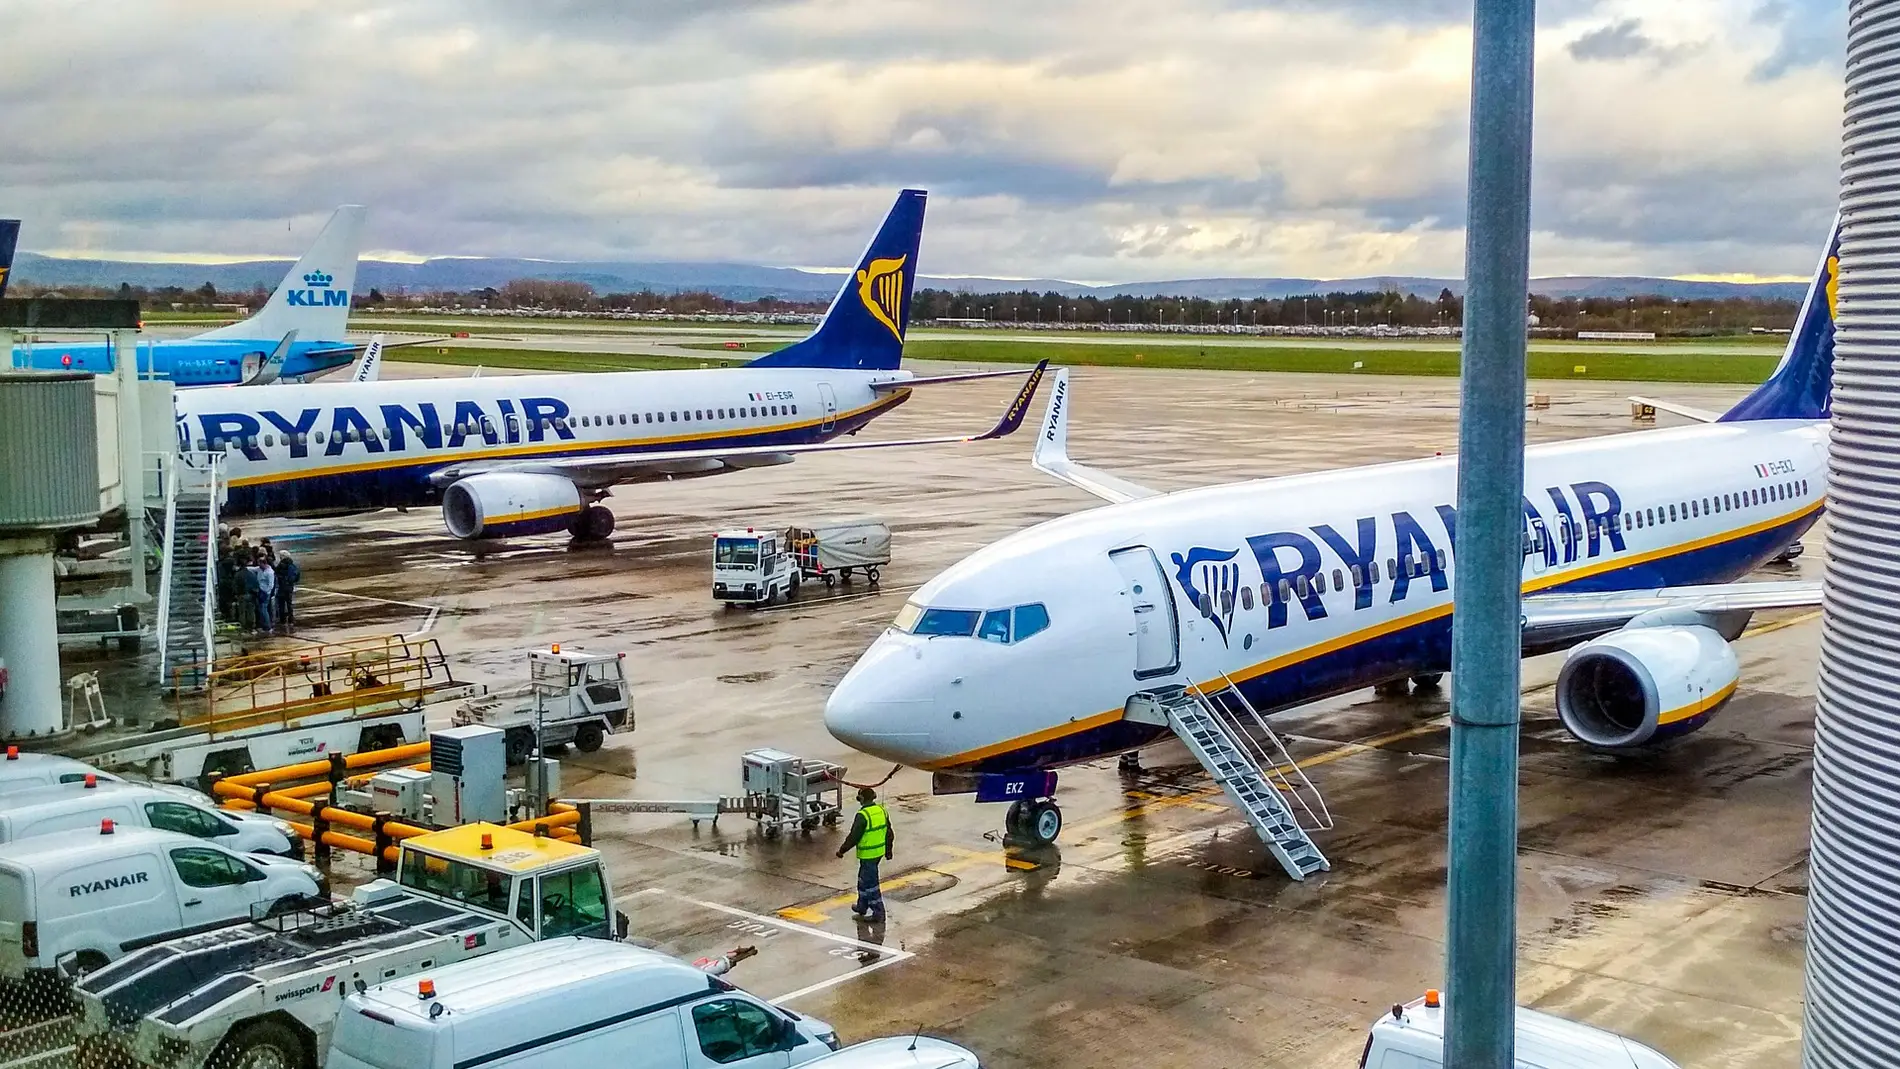 Aviones comerciales de la compañía irlandesa Ryanair en una imagen de archivo/ Pixabay